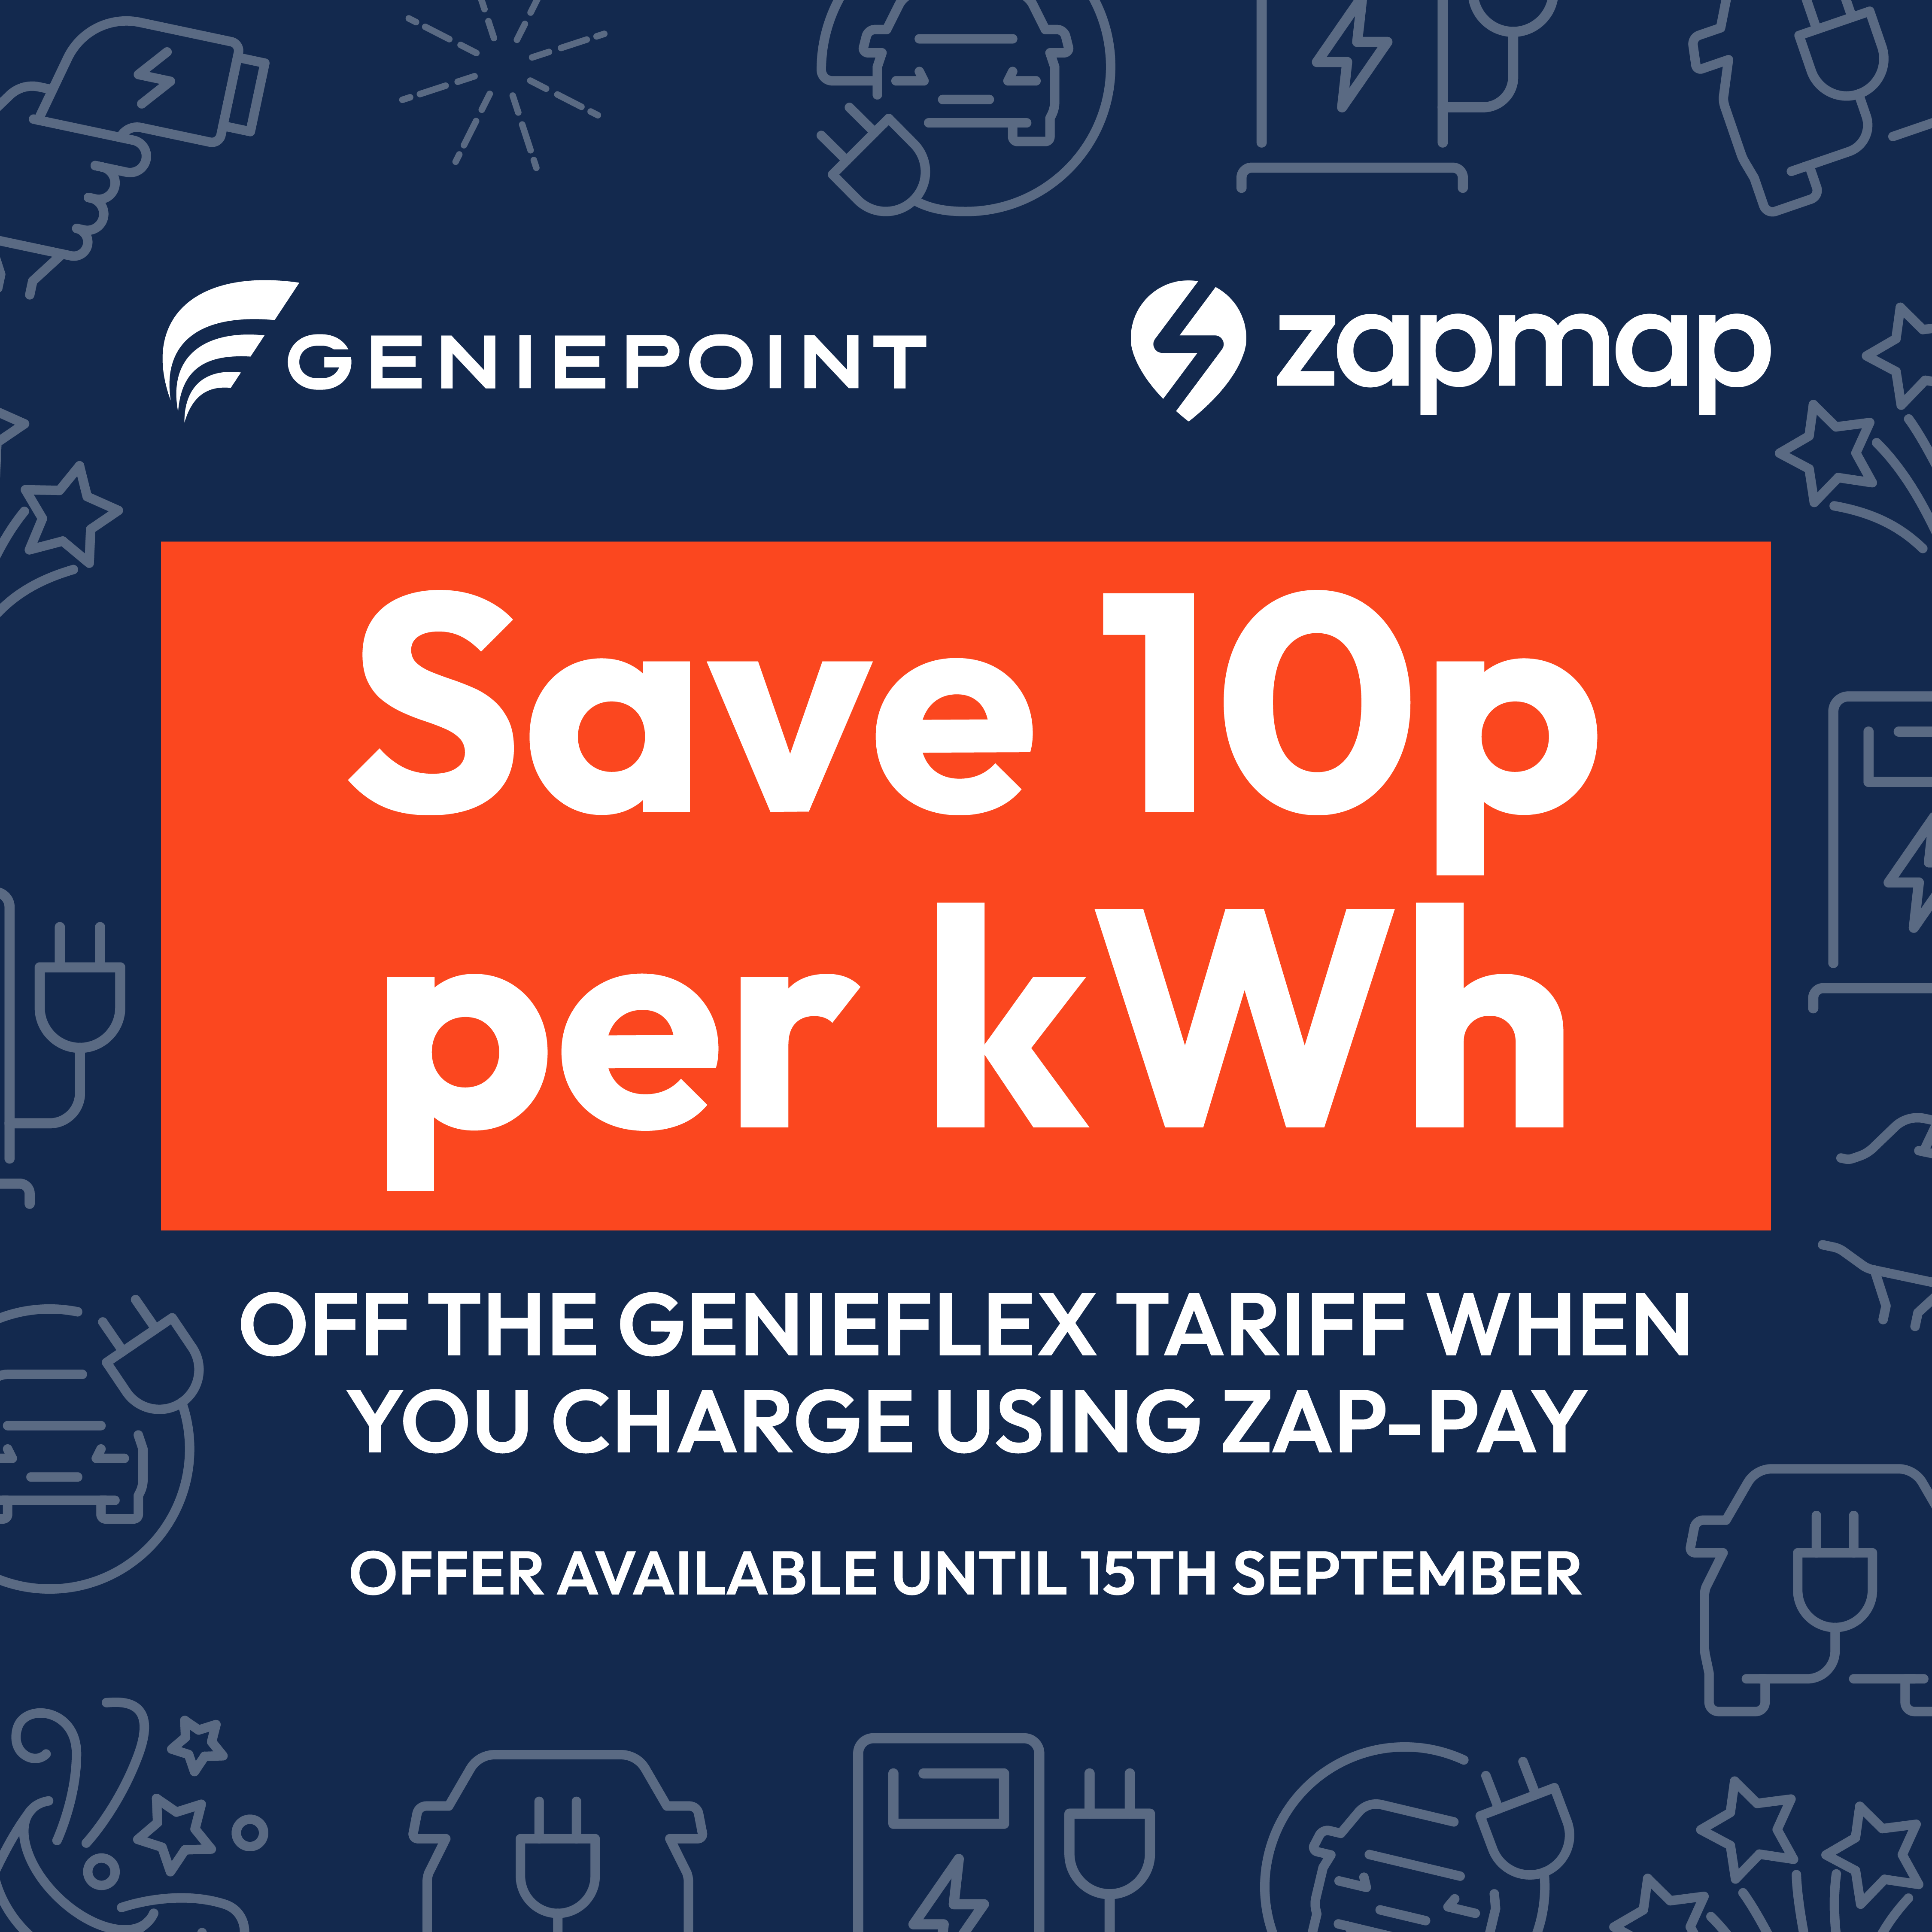 GenieFlex price tariff discount on Zap-Pay